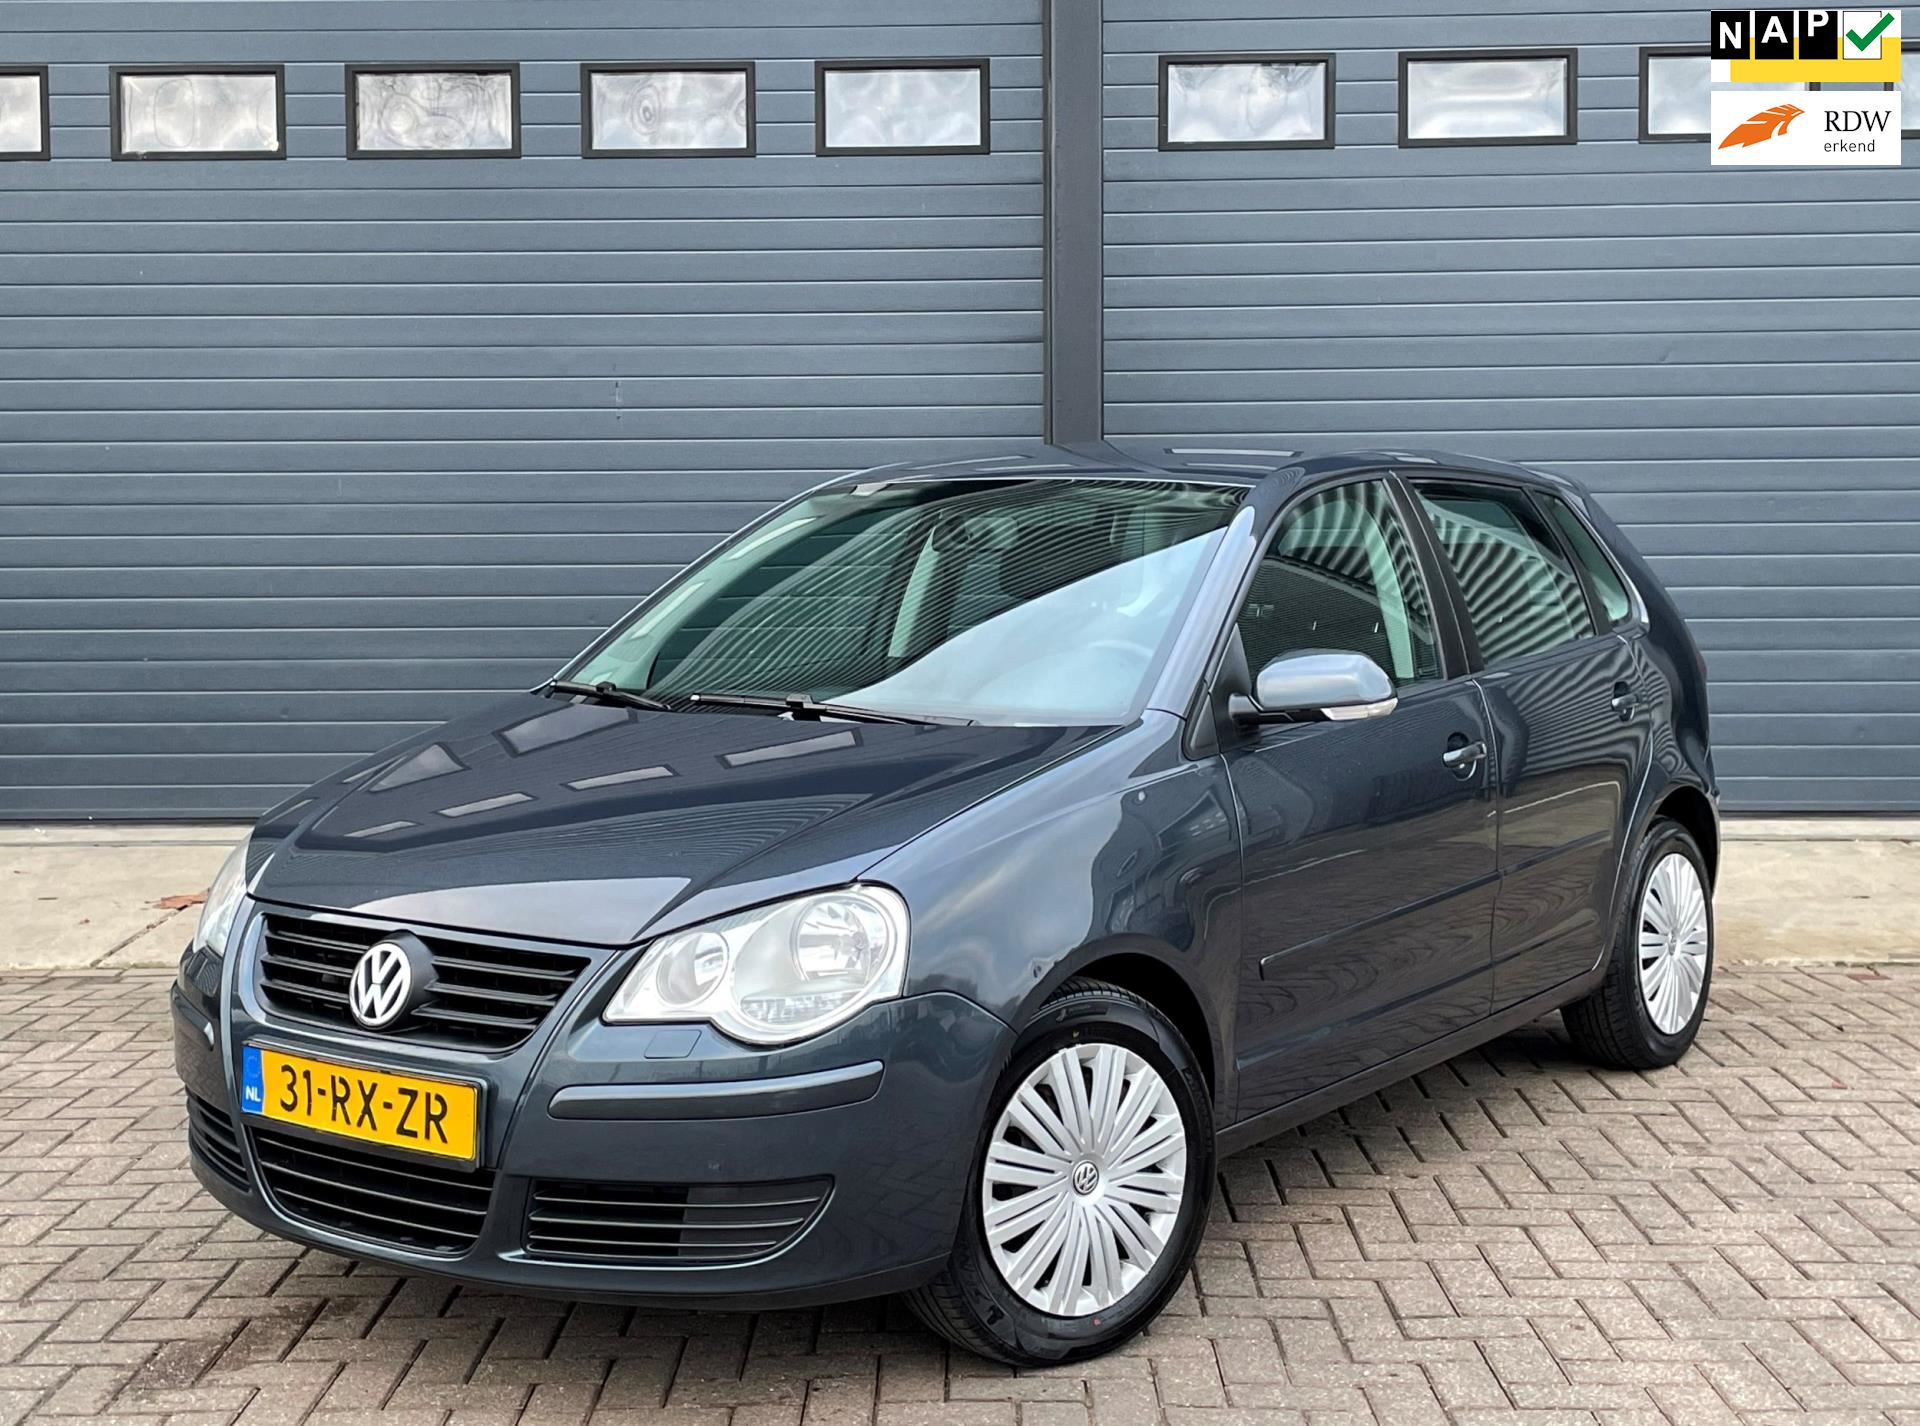 Geavanceerde Parameters Imitatie Volkswagen Polo - 1.4 55KW 2005 Blauw 5DRS NAP*ELEK.PAKKET Benzine uit 2005  - www.cartradenass.nl